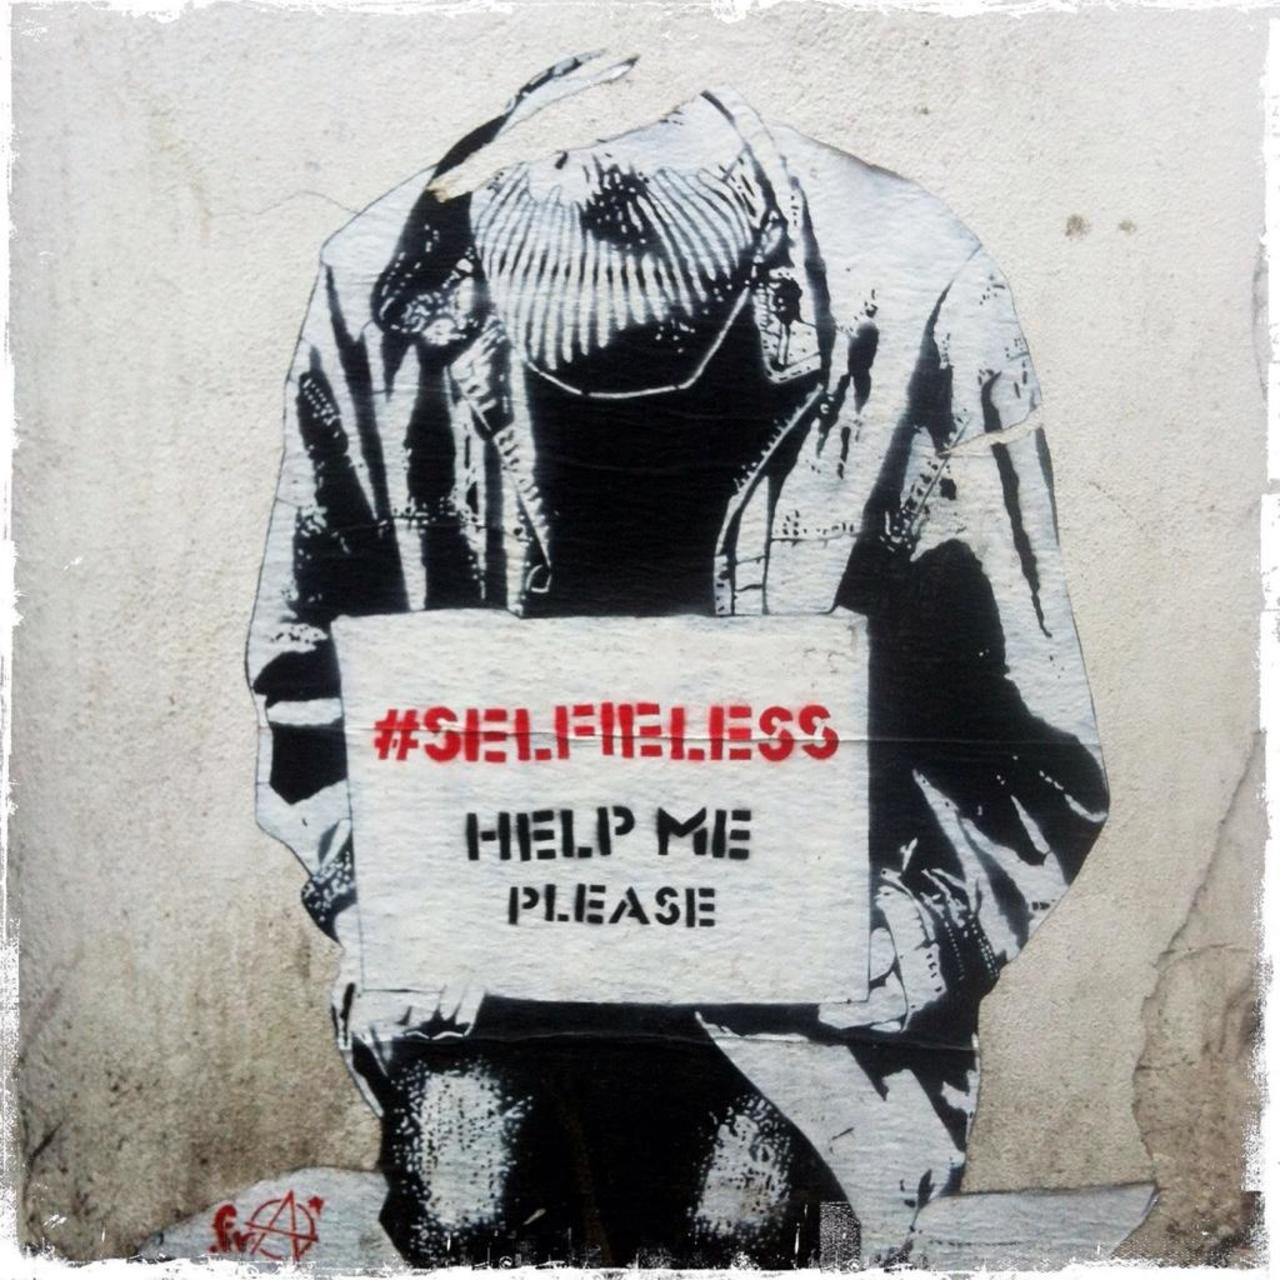 #SELFIELESS 
HELP ME PLEASE 

Great work by #FRA on White Church Lane #art #graffiti #streetart @GoogleStreetArt http://t.co/t0IOMKofK9